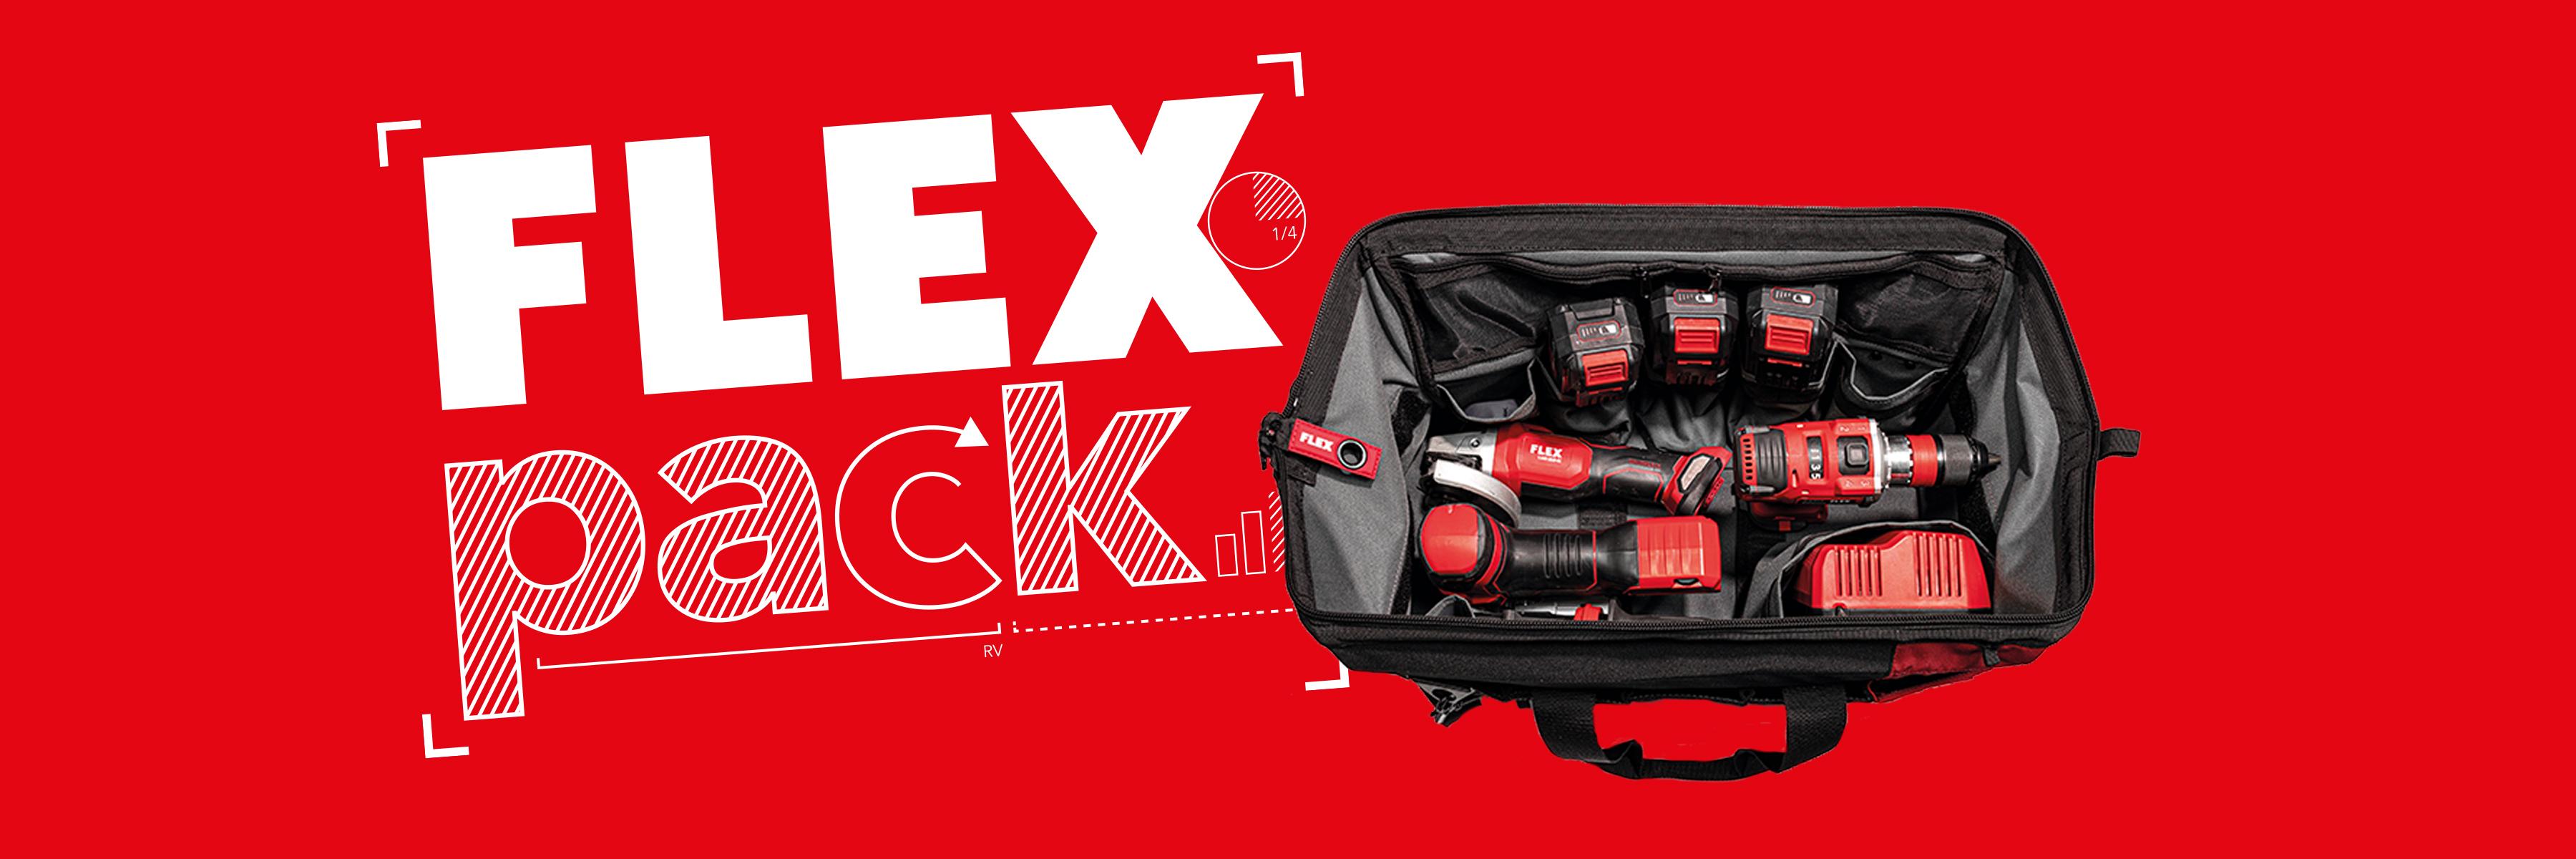 FLEXPACK promotie: 3 FLEX snoerloze machines met lader en batterijen in tas